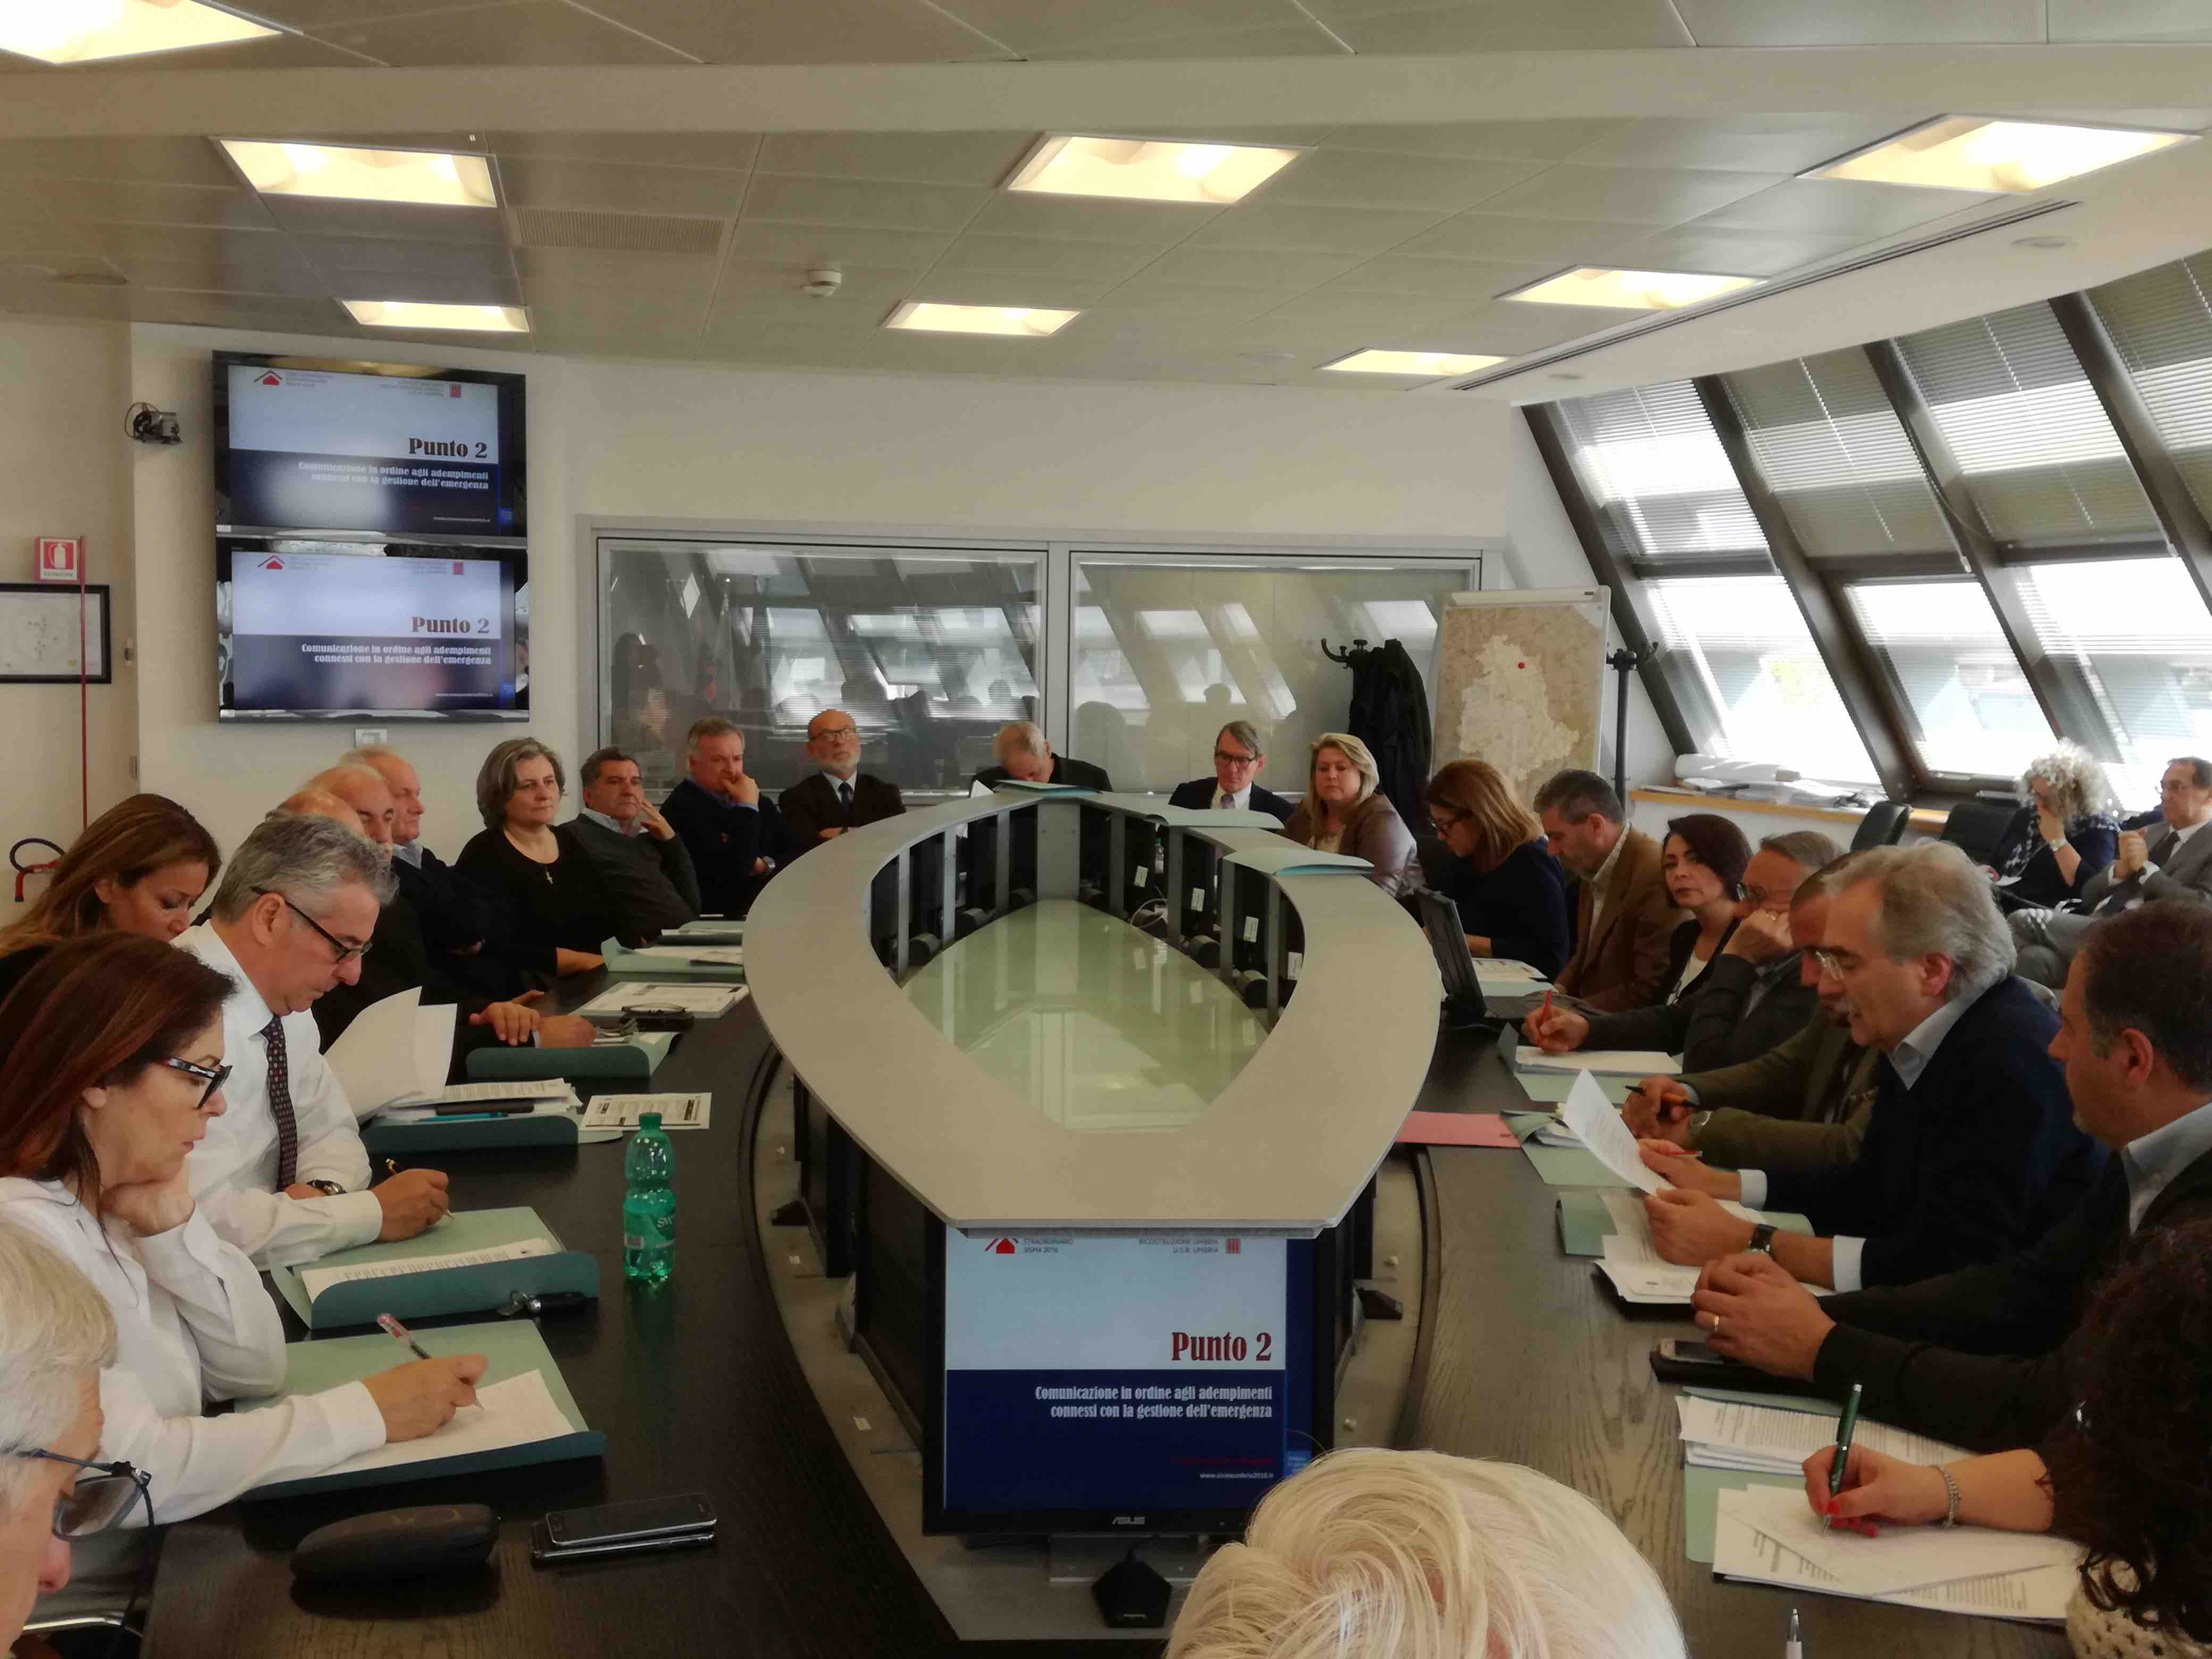 Comitato istituzionale sisma riunito a Foligno